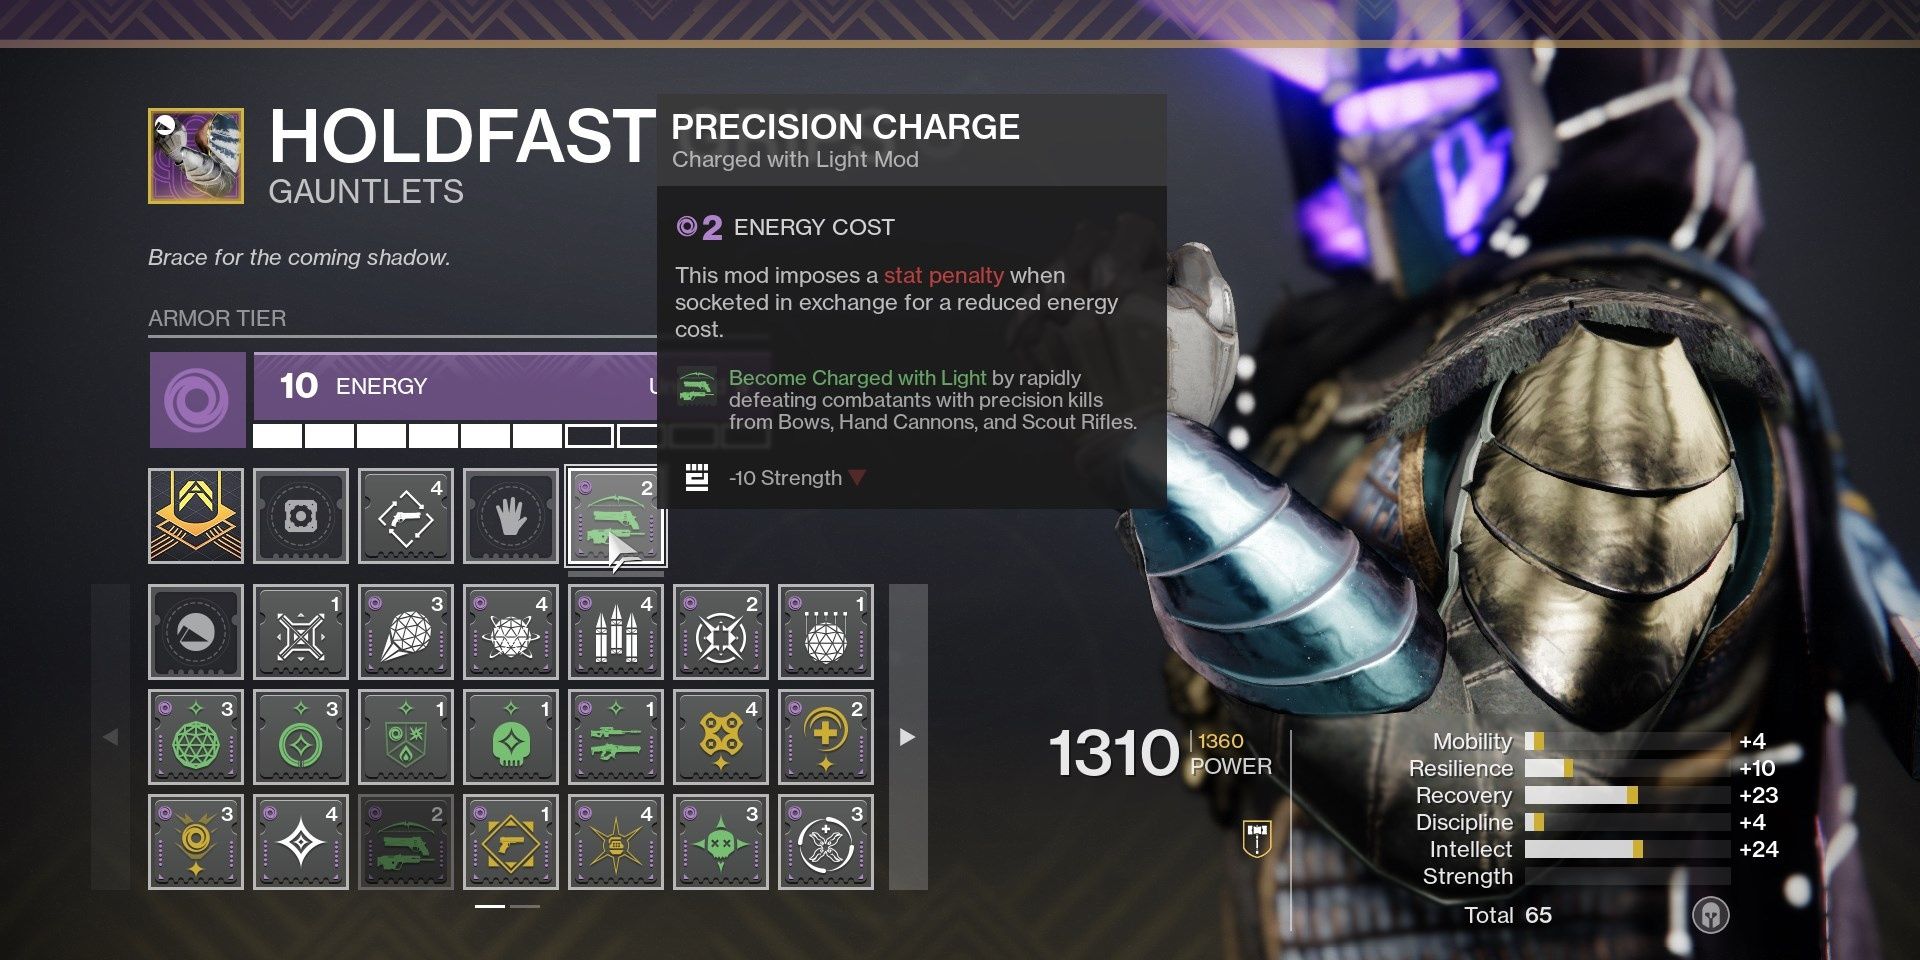 Destiny 2 Precision Charge Description